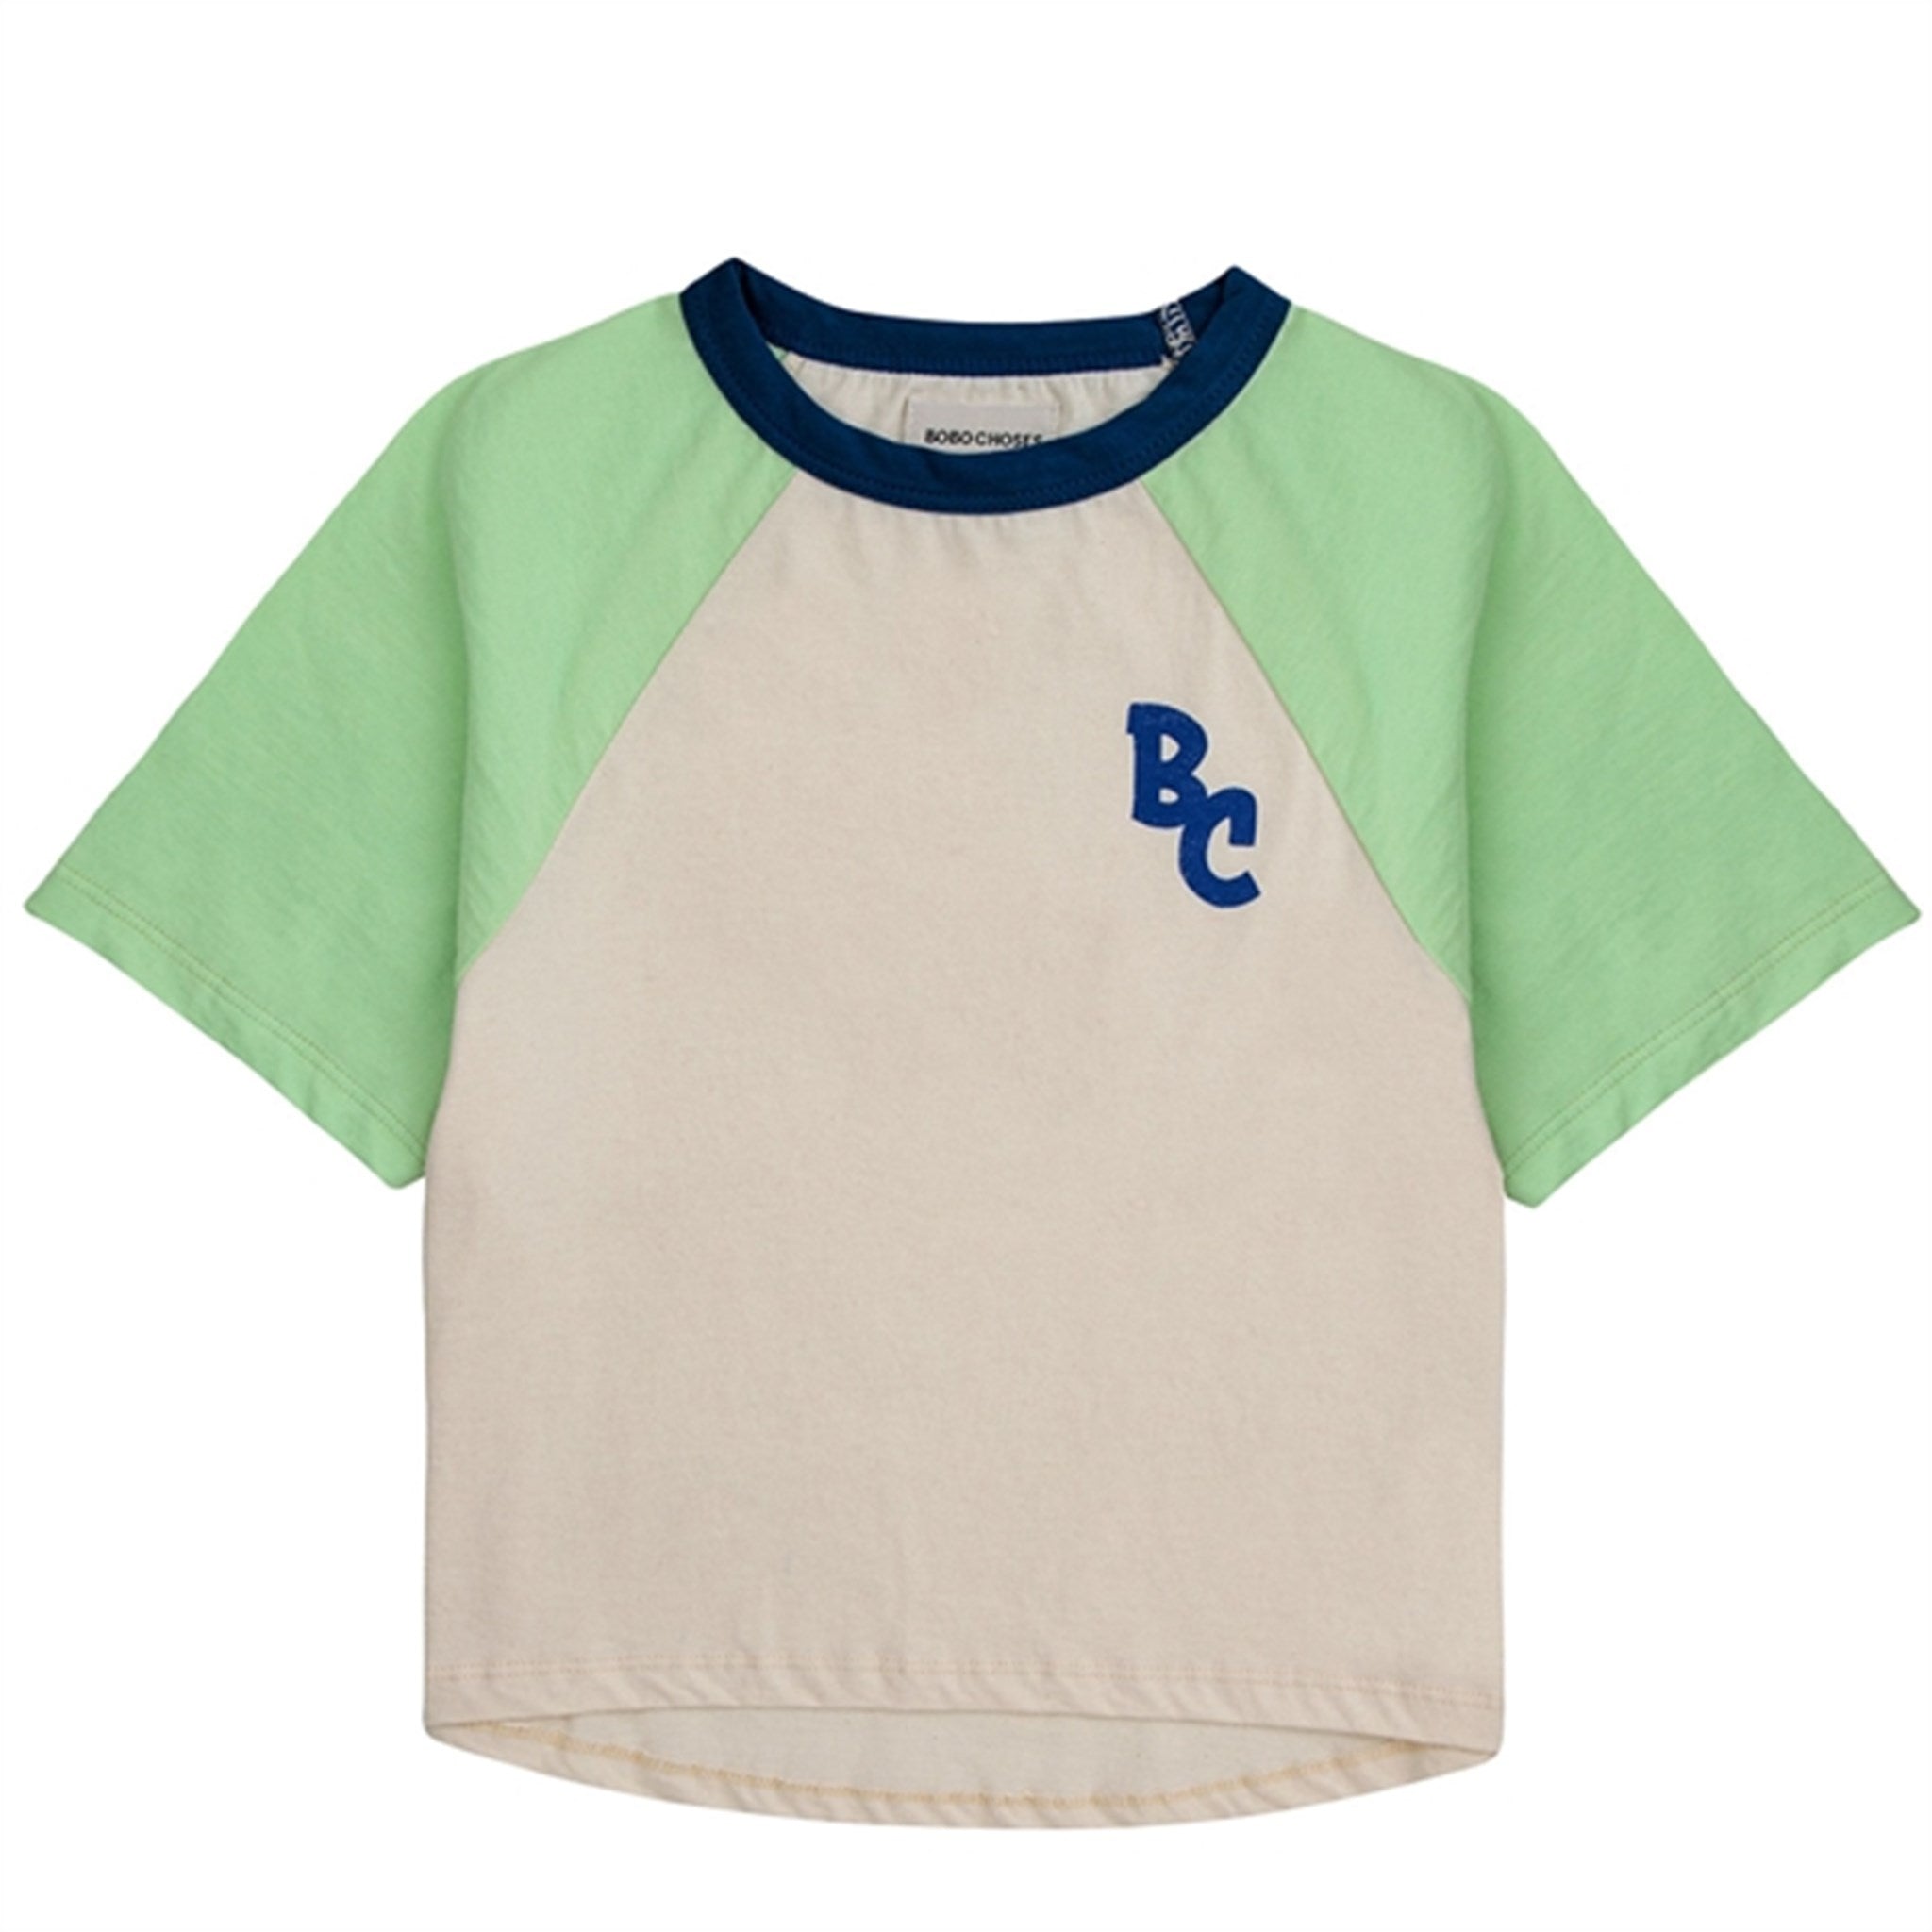 Bobo Choses Bc Color Block Raglan Sleeves T-Shirt Jade Green